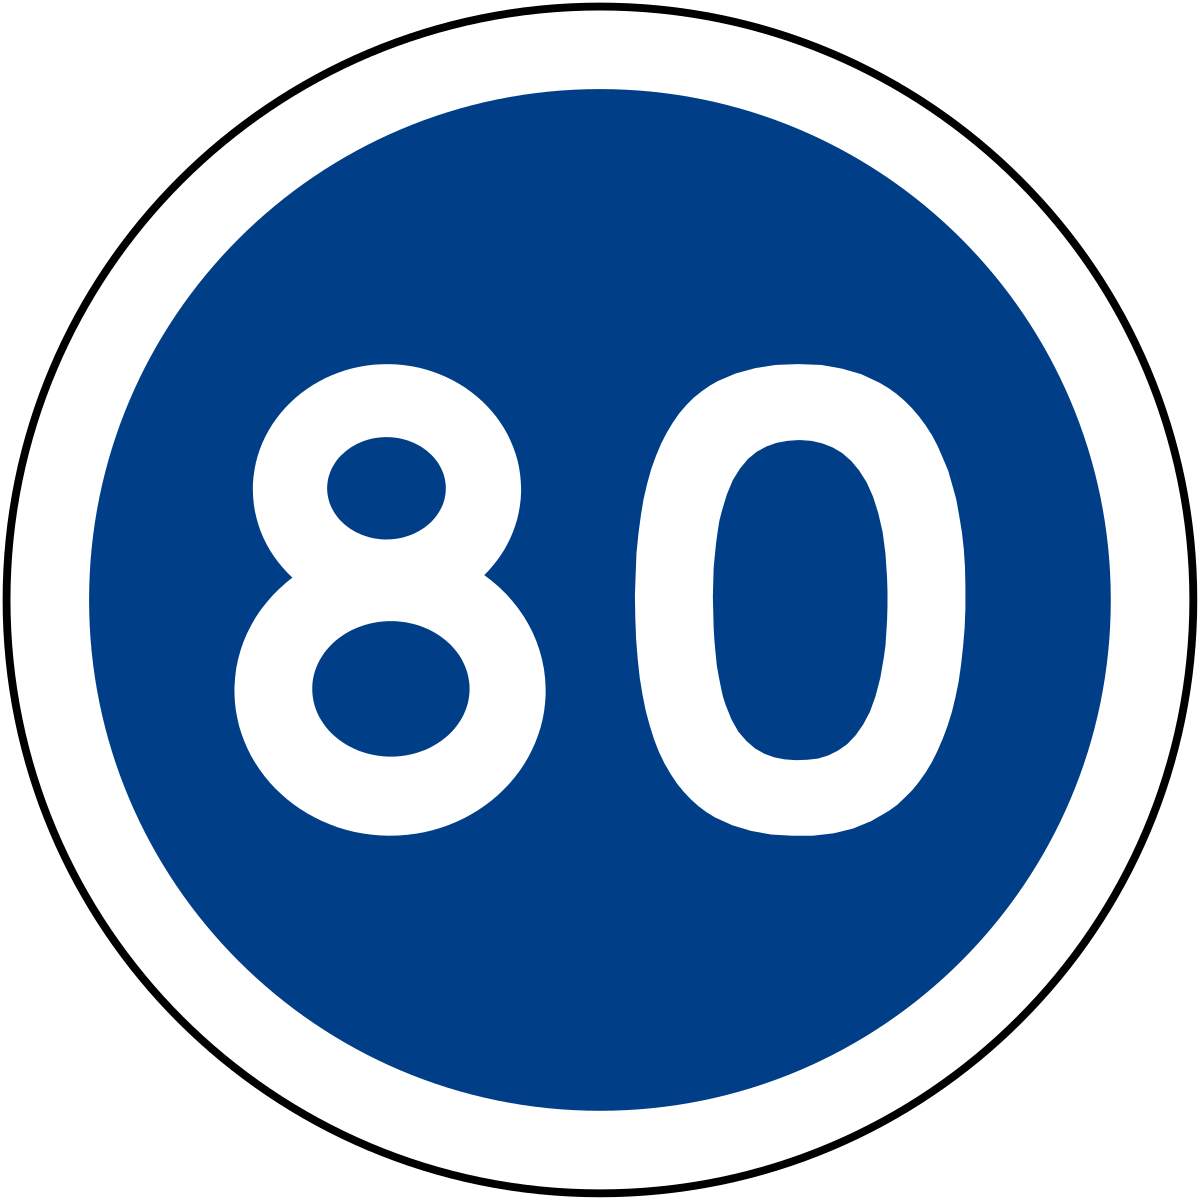 Знак скорость 90. Знак минимальная скорость 80. Ограничение минимальной скорости 80. Знак ограничения скорости 80 км/ч. Дорожный знак 4.6 ограничение минимальной скорости.